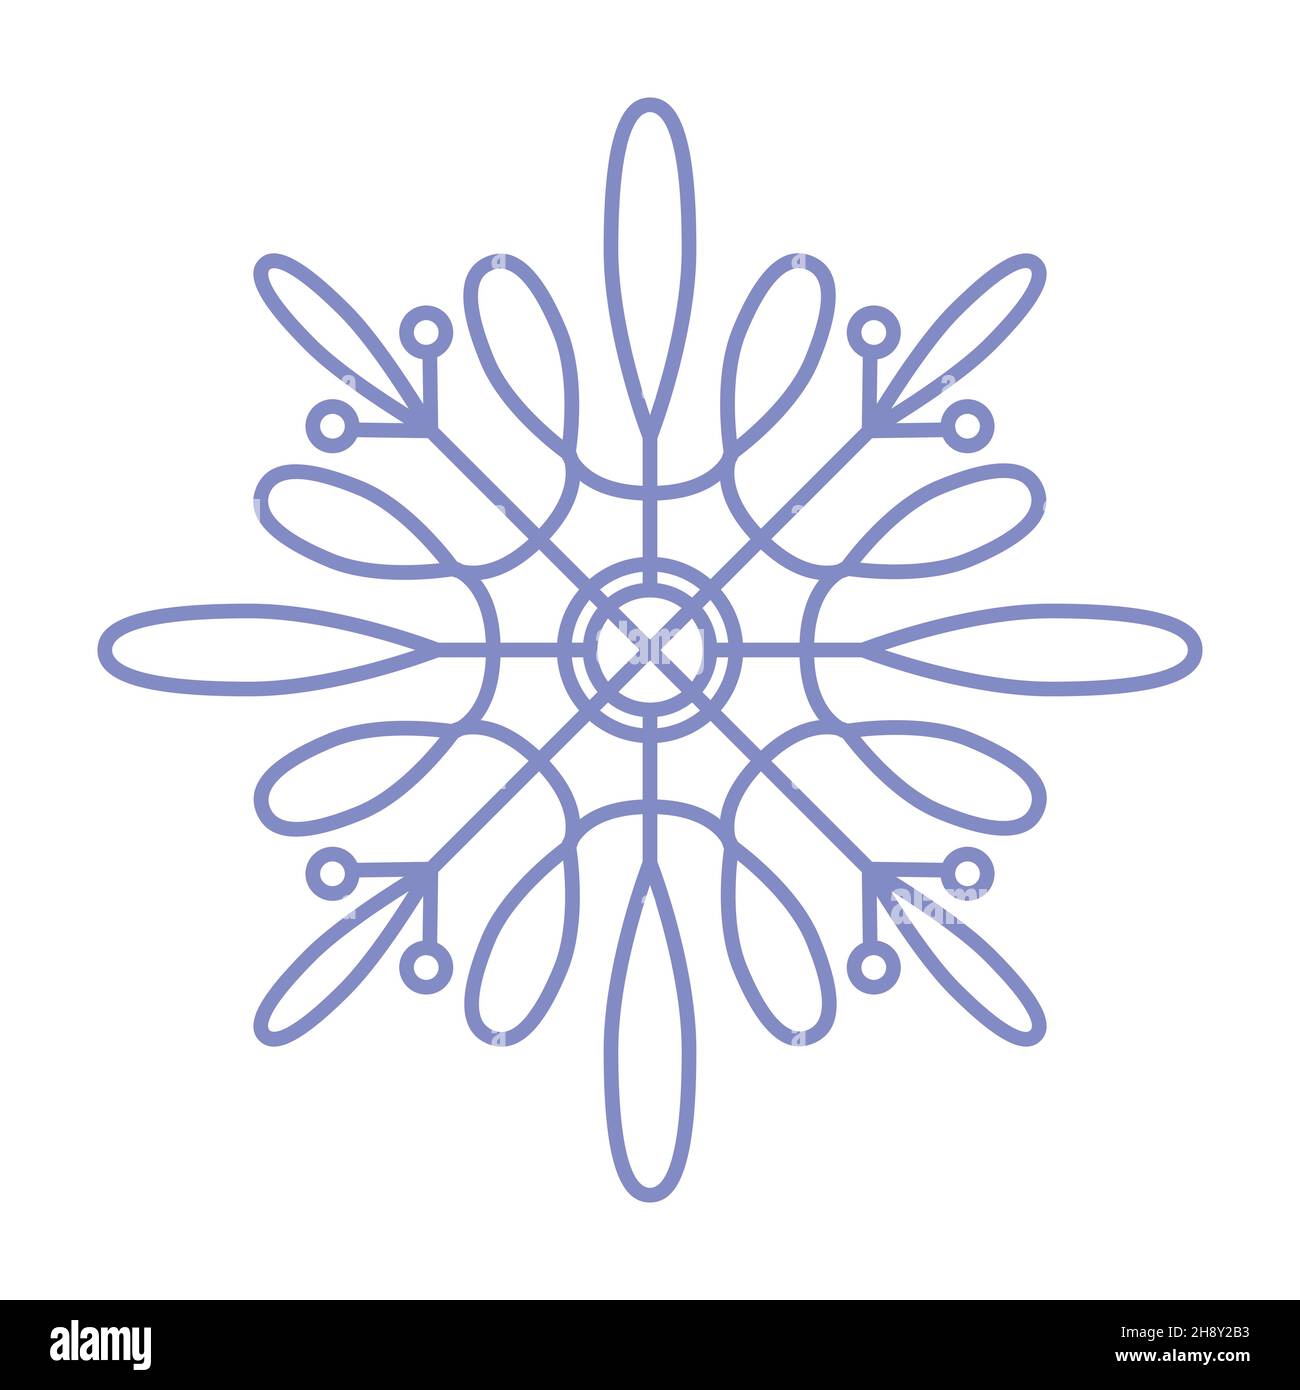 Icona fiocco di neve. Semplice illustrazione di linee vettoriali piatte isolate su sfondo bianco. Silhouette fiocco di neve. Illustrazione Vettoriale